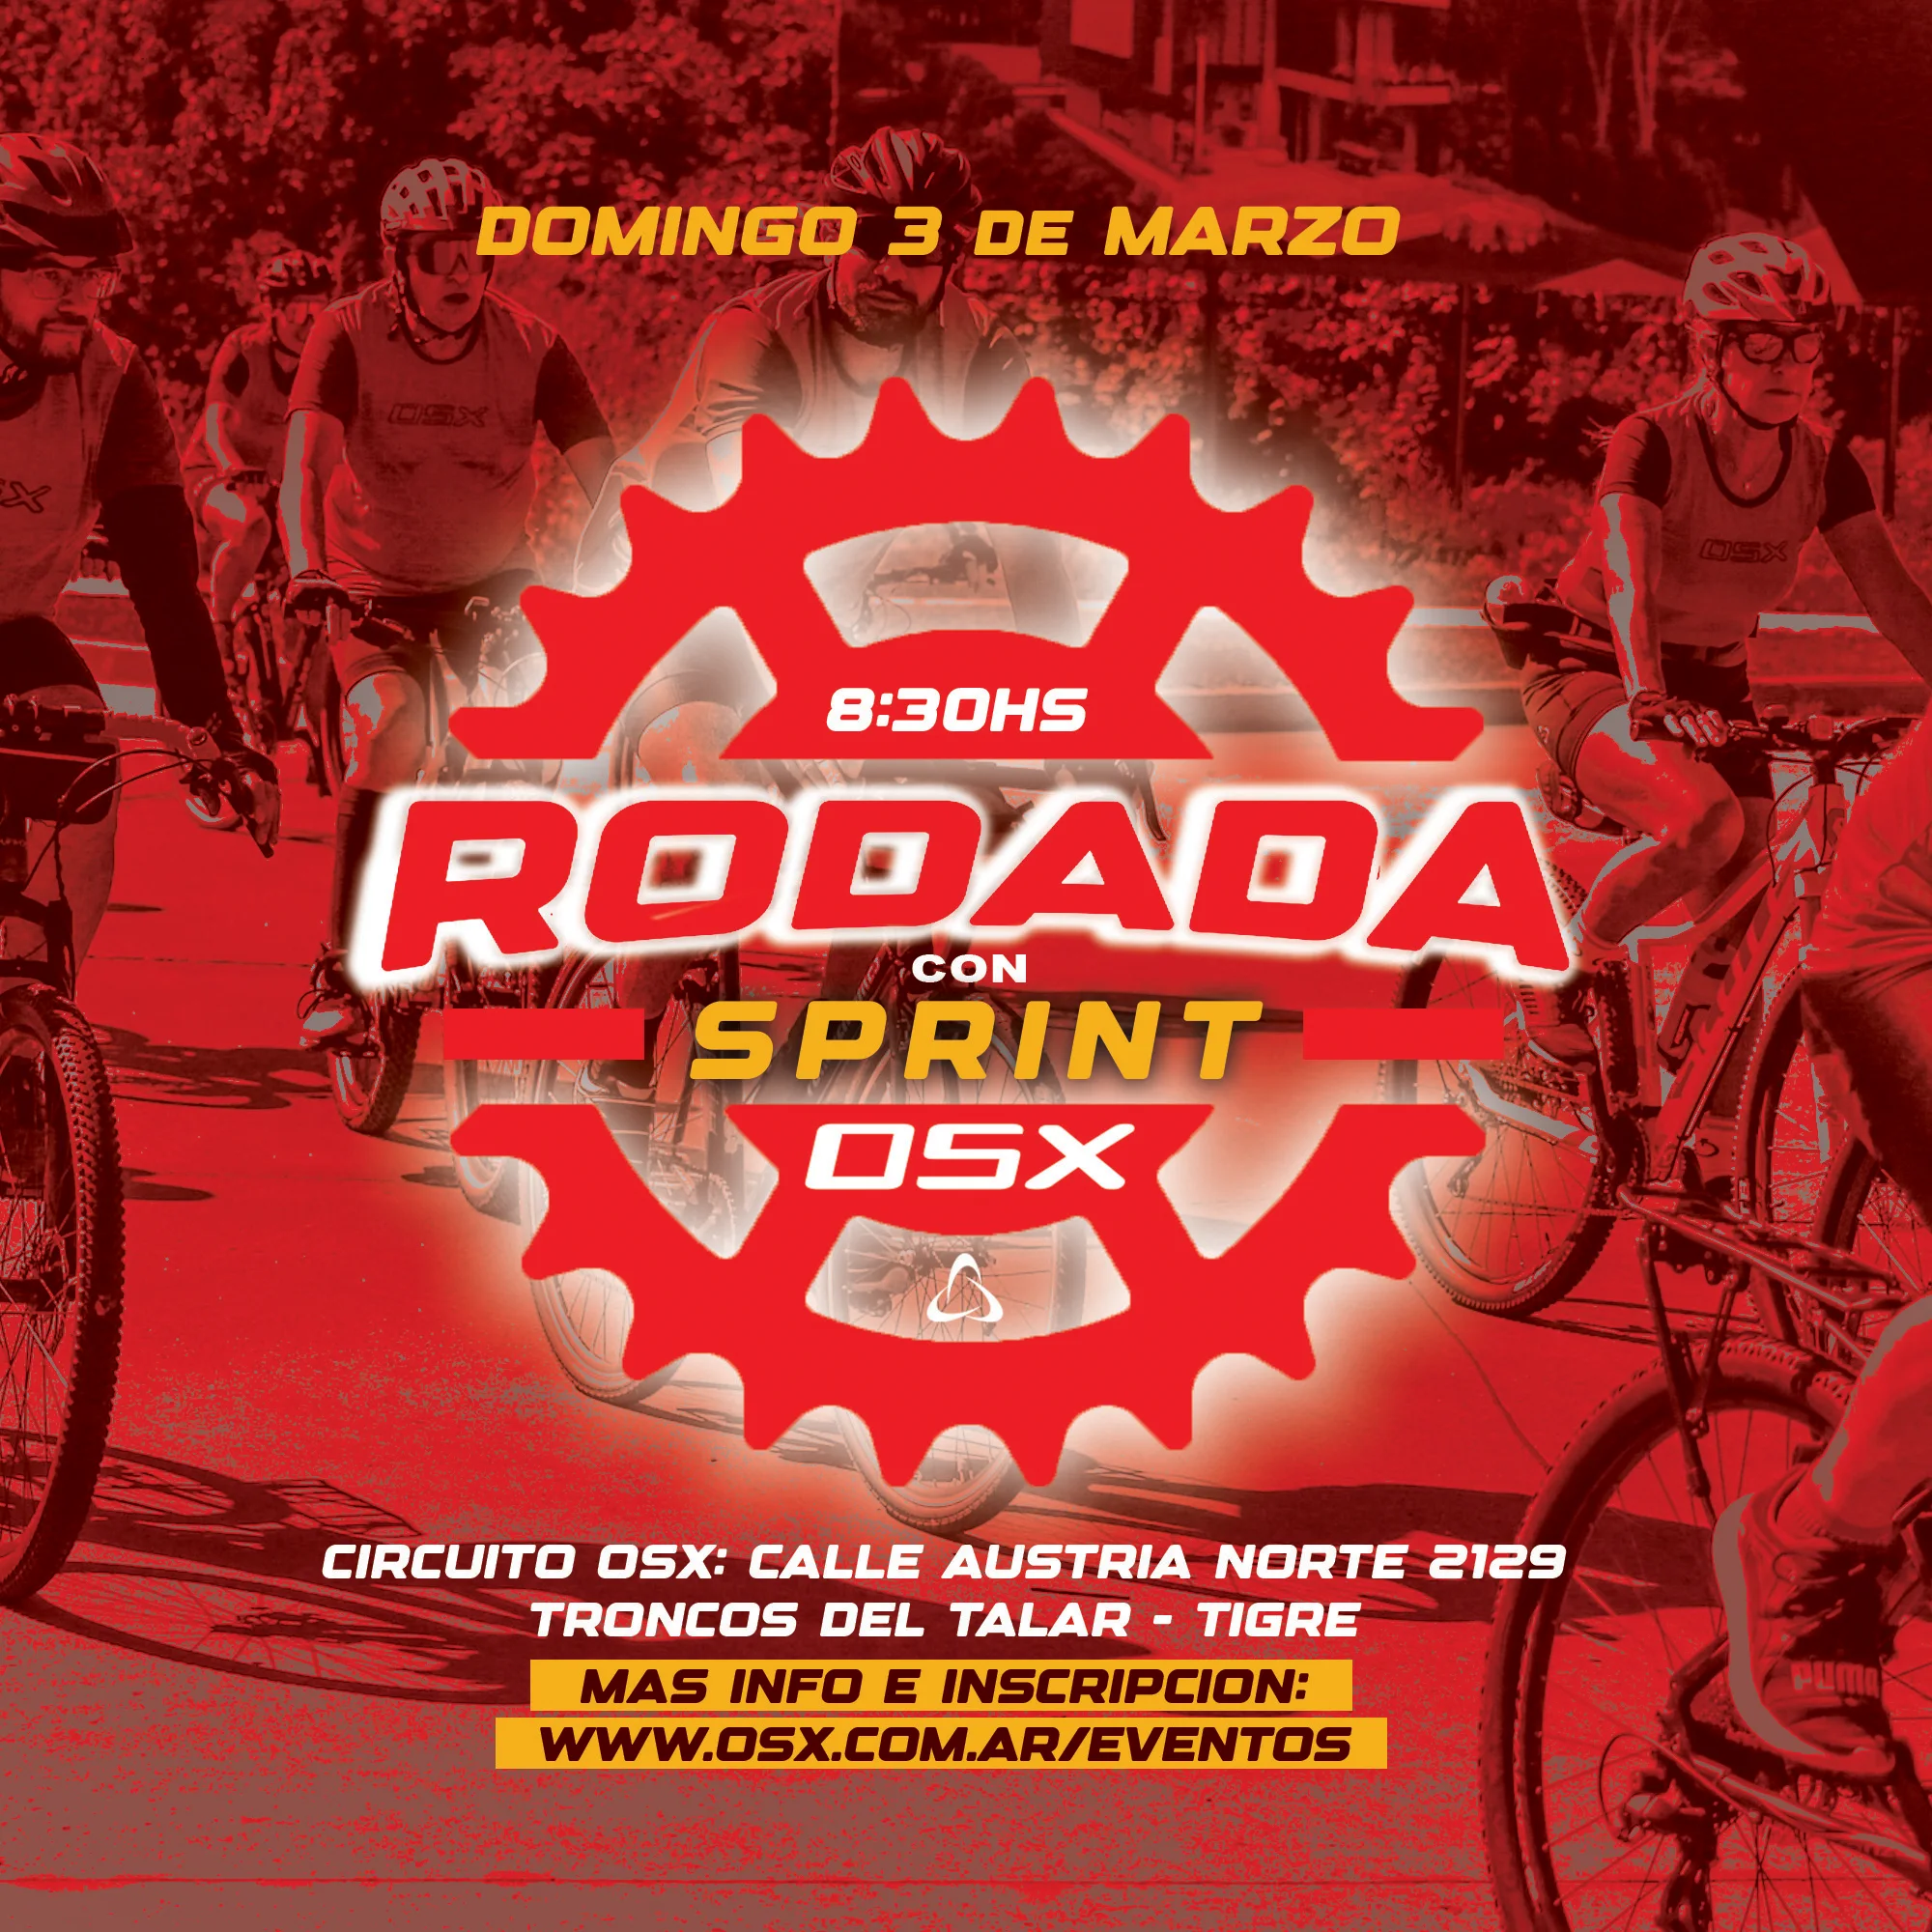 AGOTADO / RODADA CON SPRINT OSX